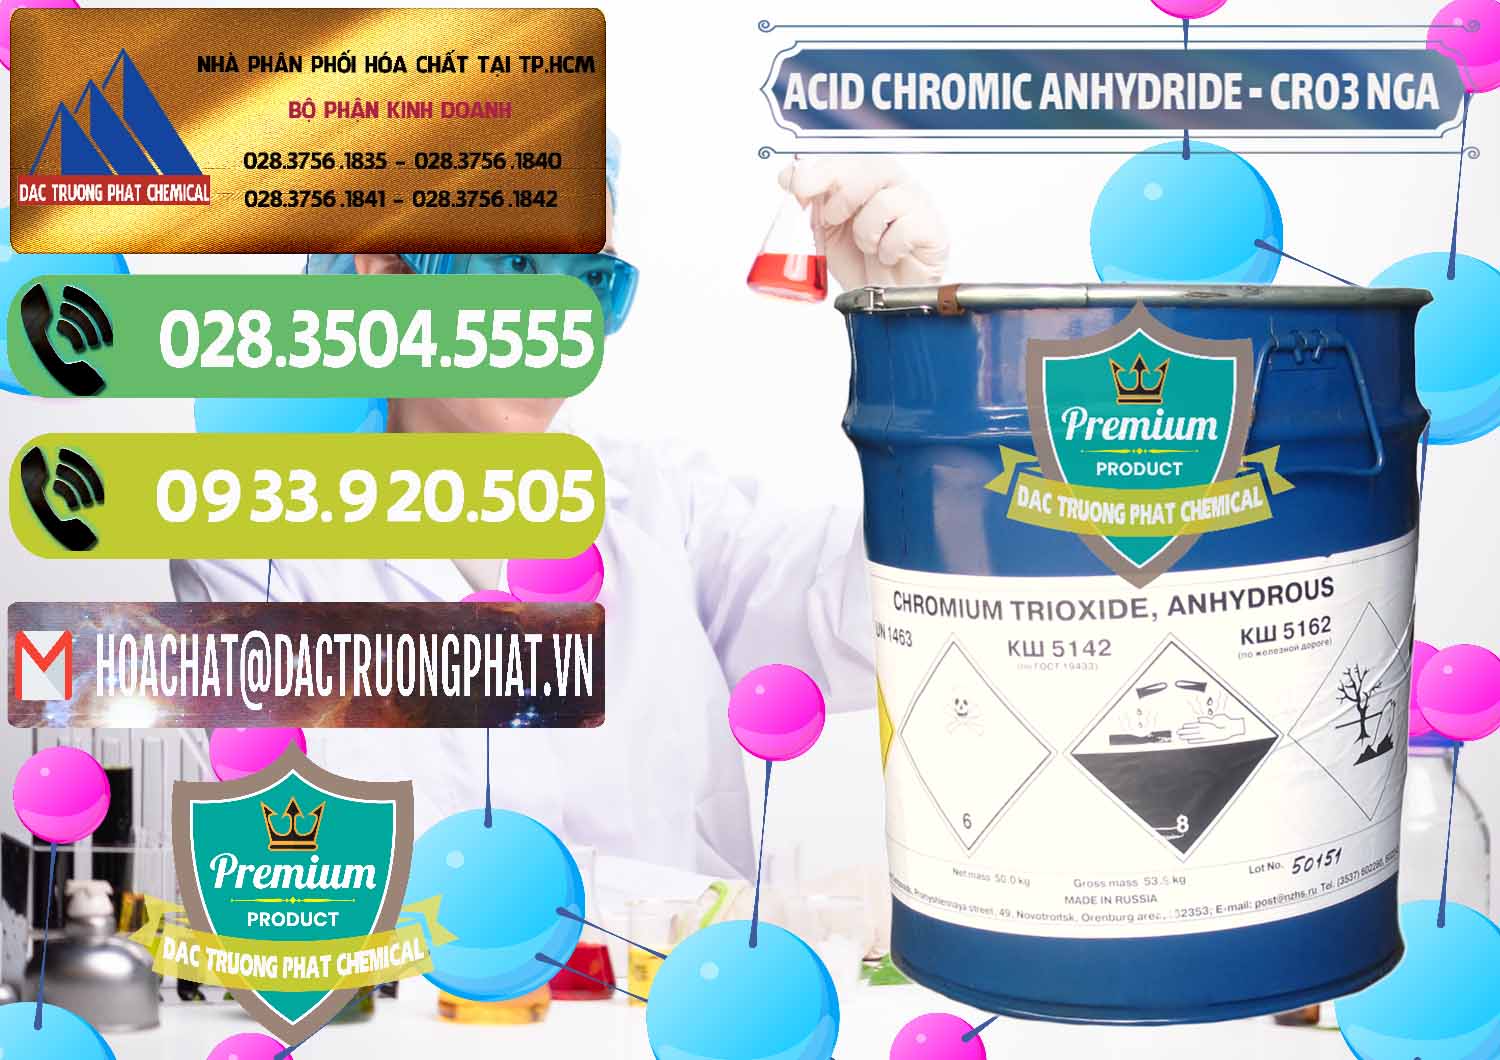 Đơn vị cung cấp _ bán Acid Chromic Anhydride - Cromic CRO3 Nga Russia - 0006 - Cty phân phối ( cung cấp ) hóa chất tại TP.HCM - hoachatmientay.vn